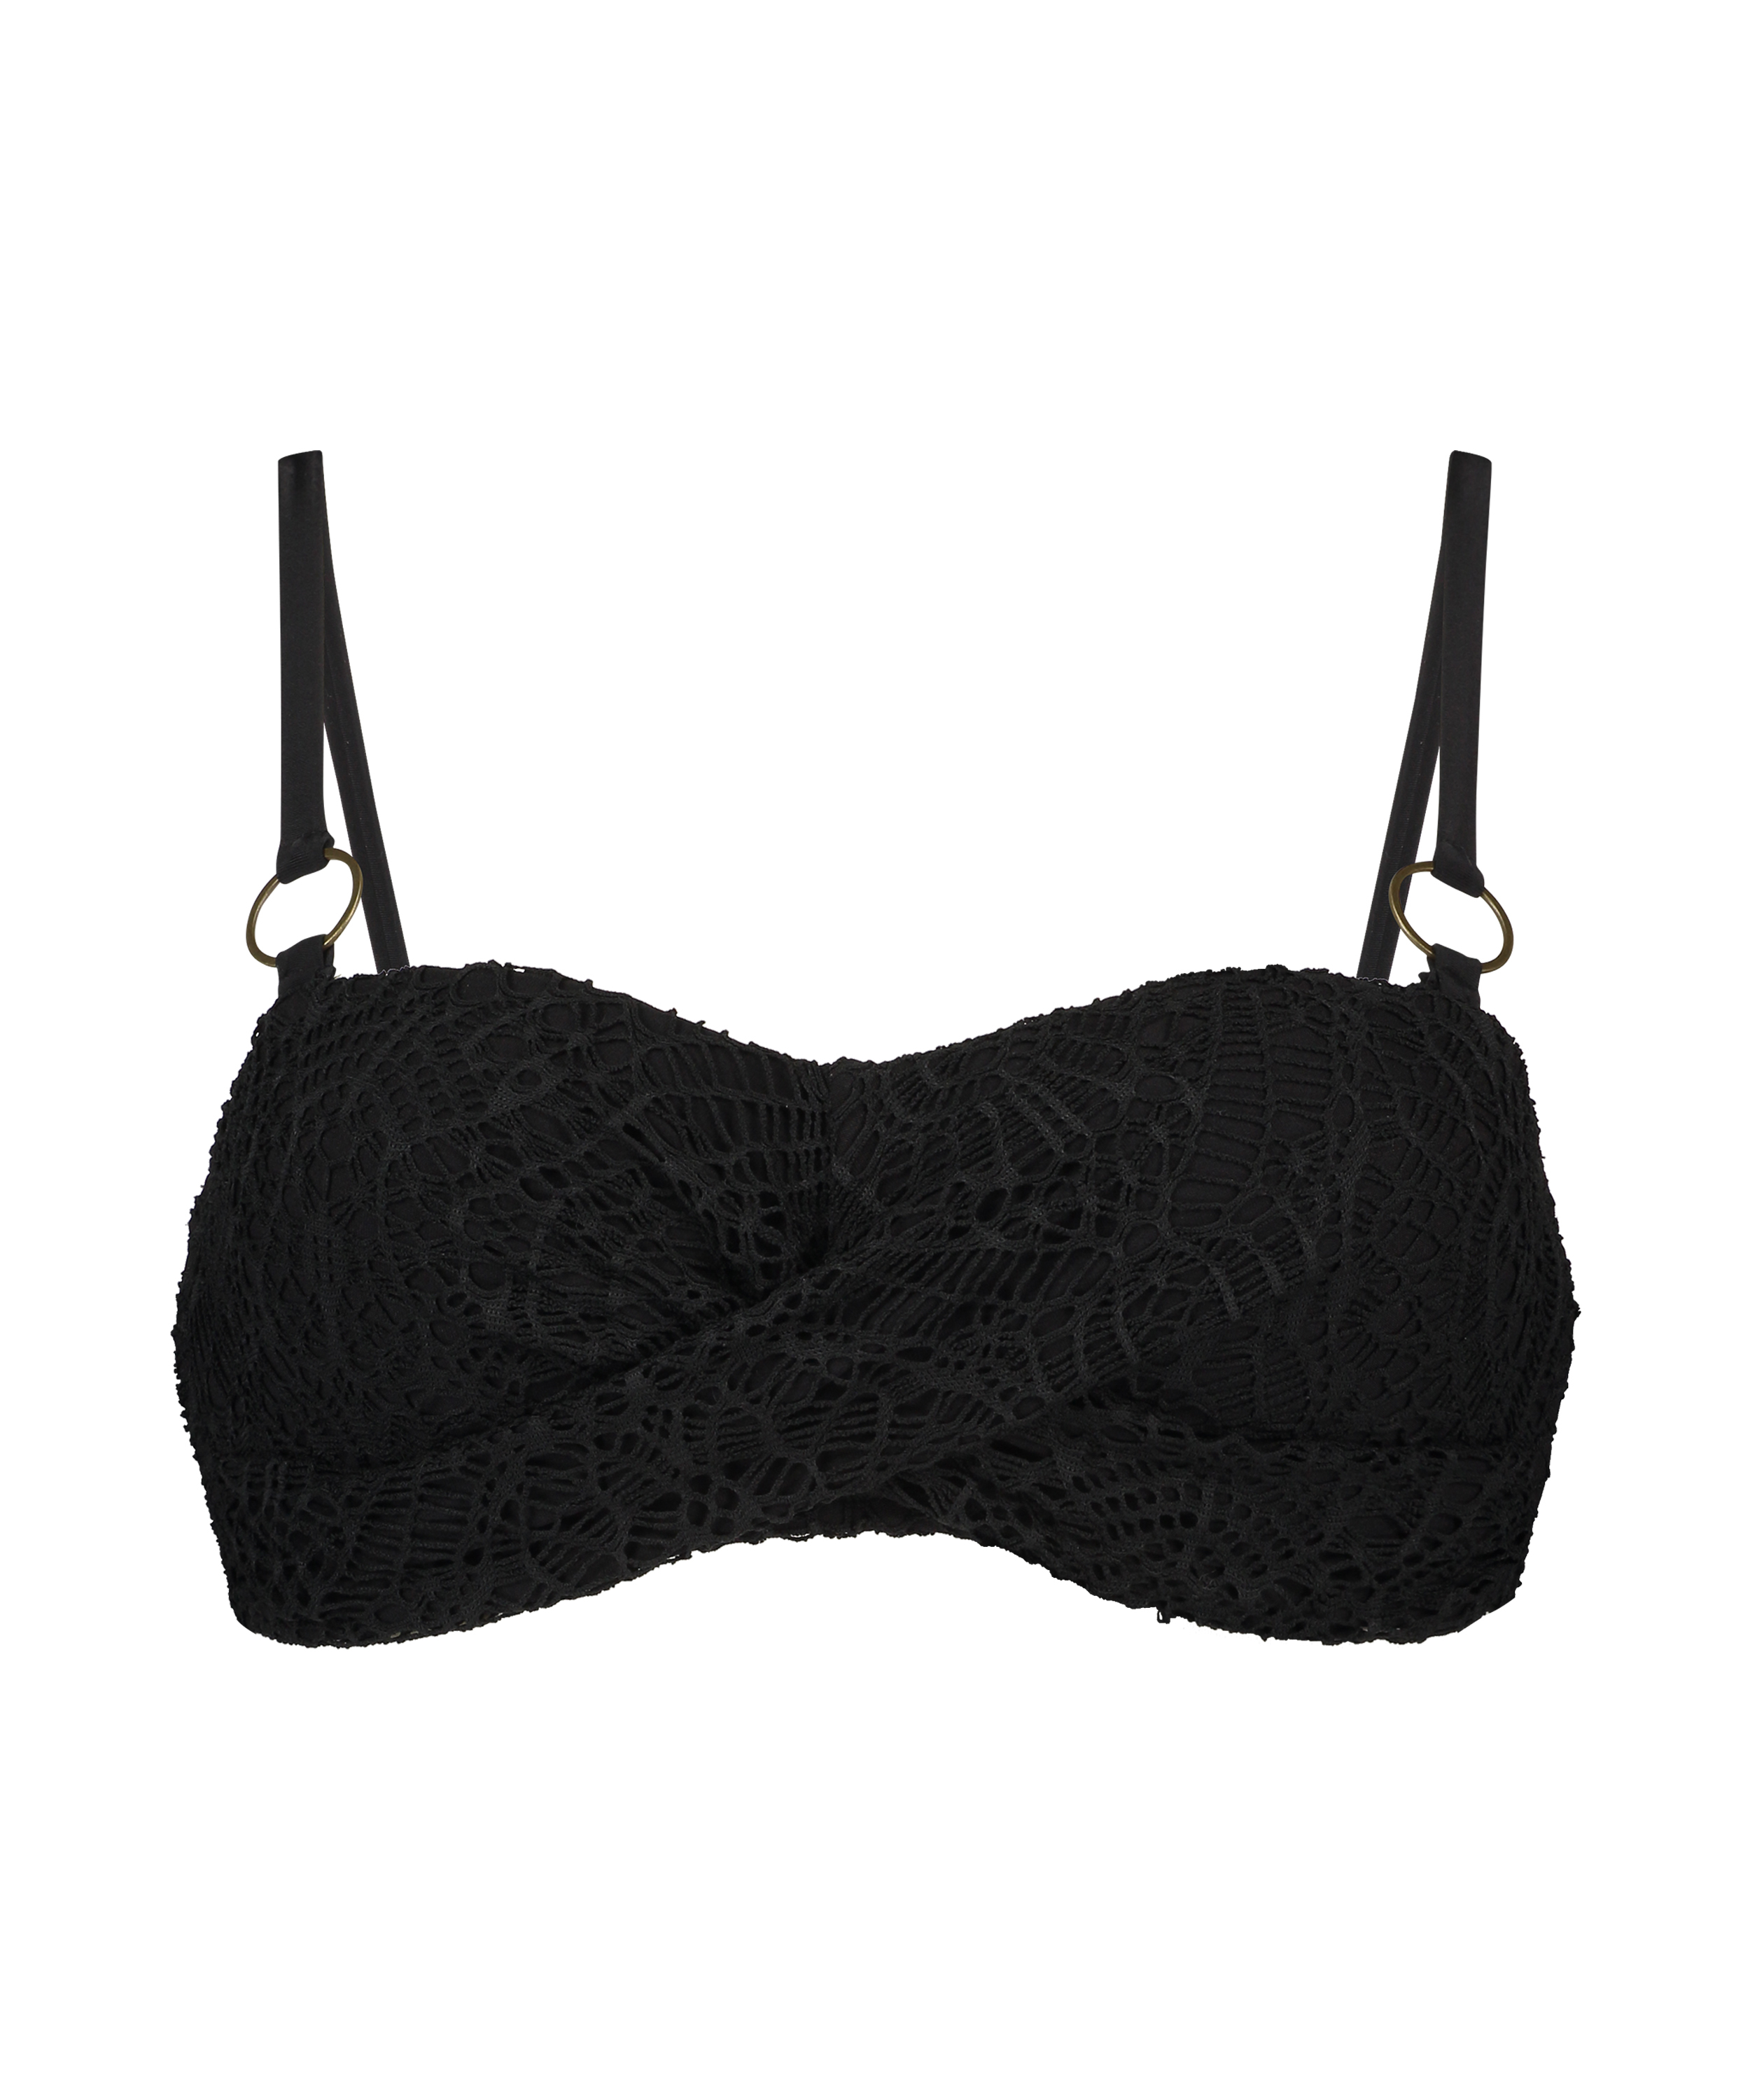 Haut de bikini bandeau préformé Crochet, Noir, main